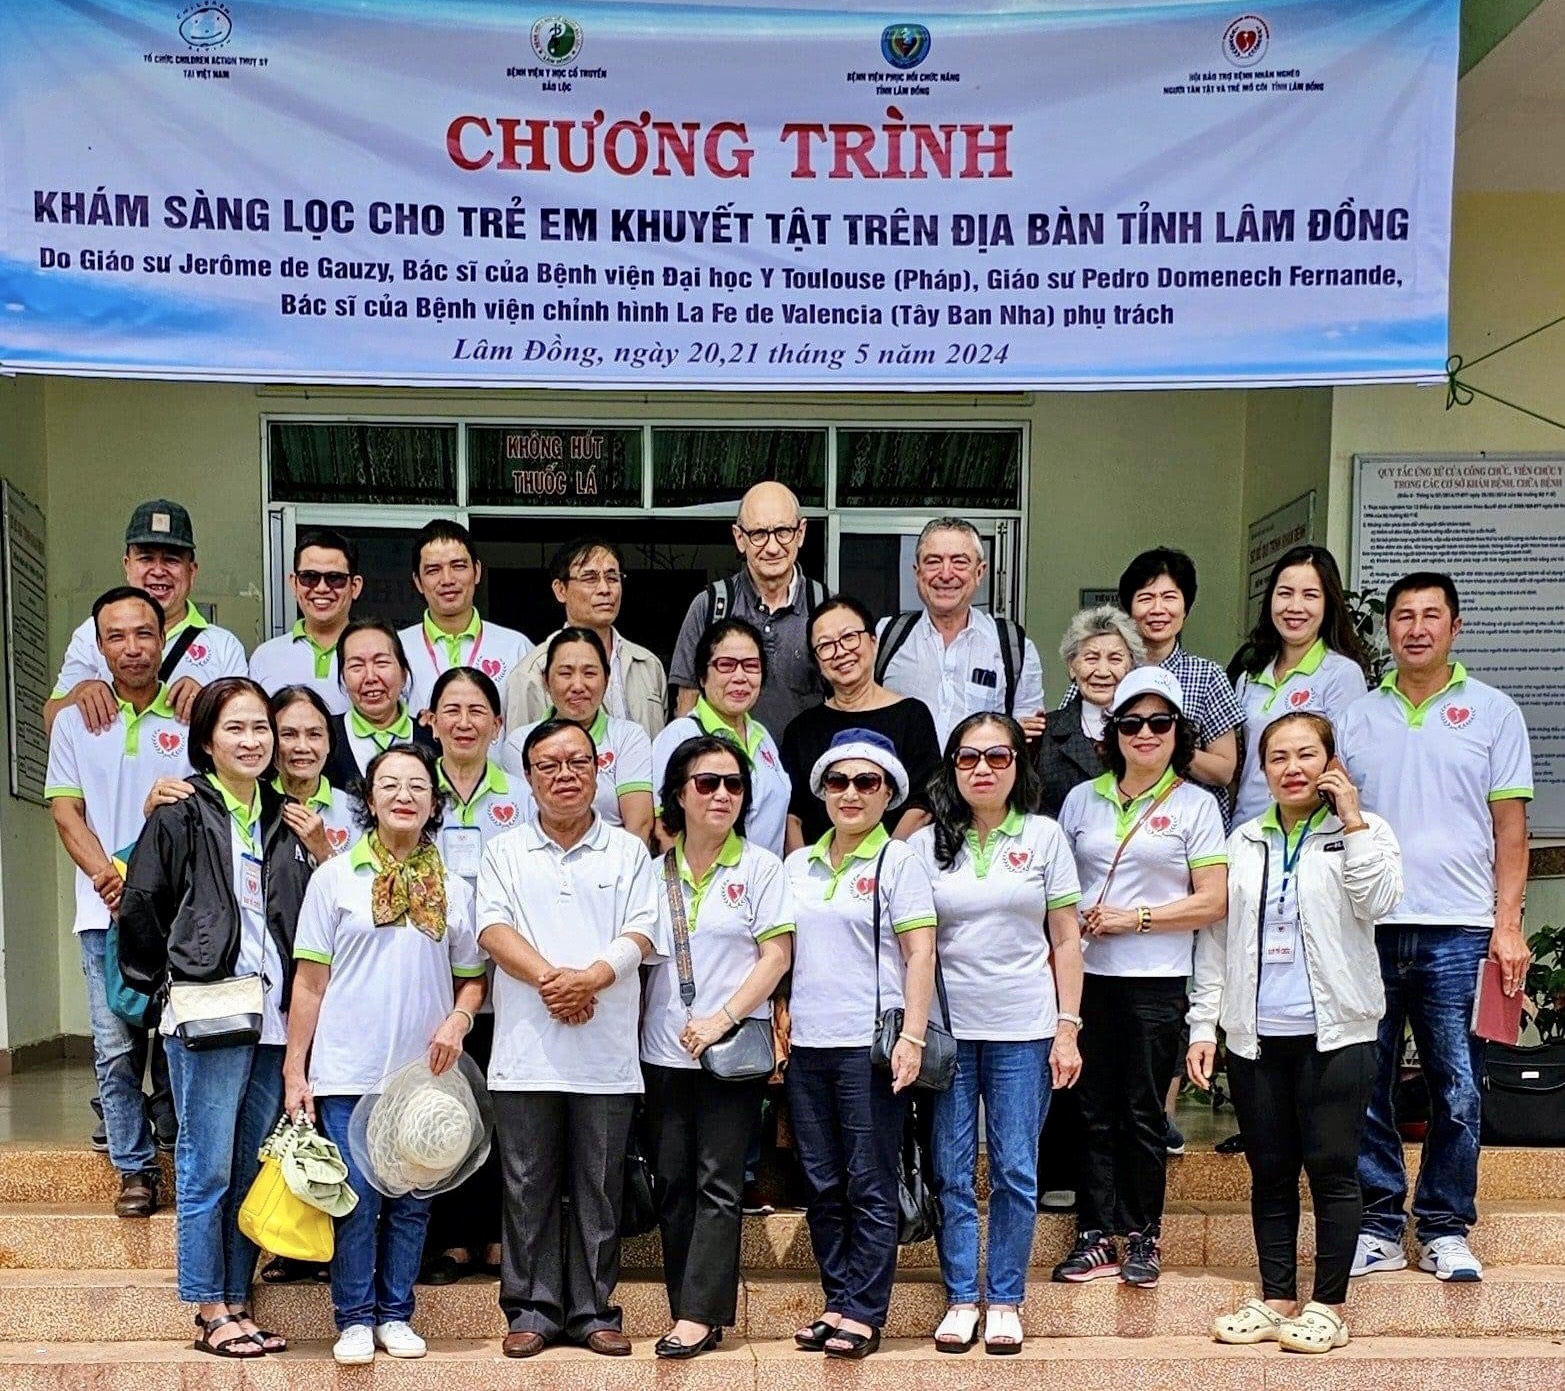 Chương trình nhân đạo này đã được Hội Bảo trợ Bệnh nhân nghèo – Người tàn tật và Trẻ mồ côi Lâm Đồng duy trì nhiều năm tại Lâm Đồng